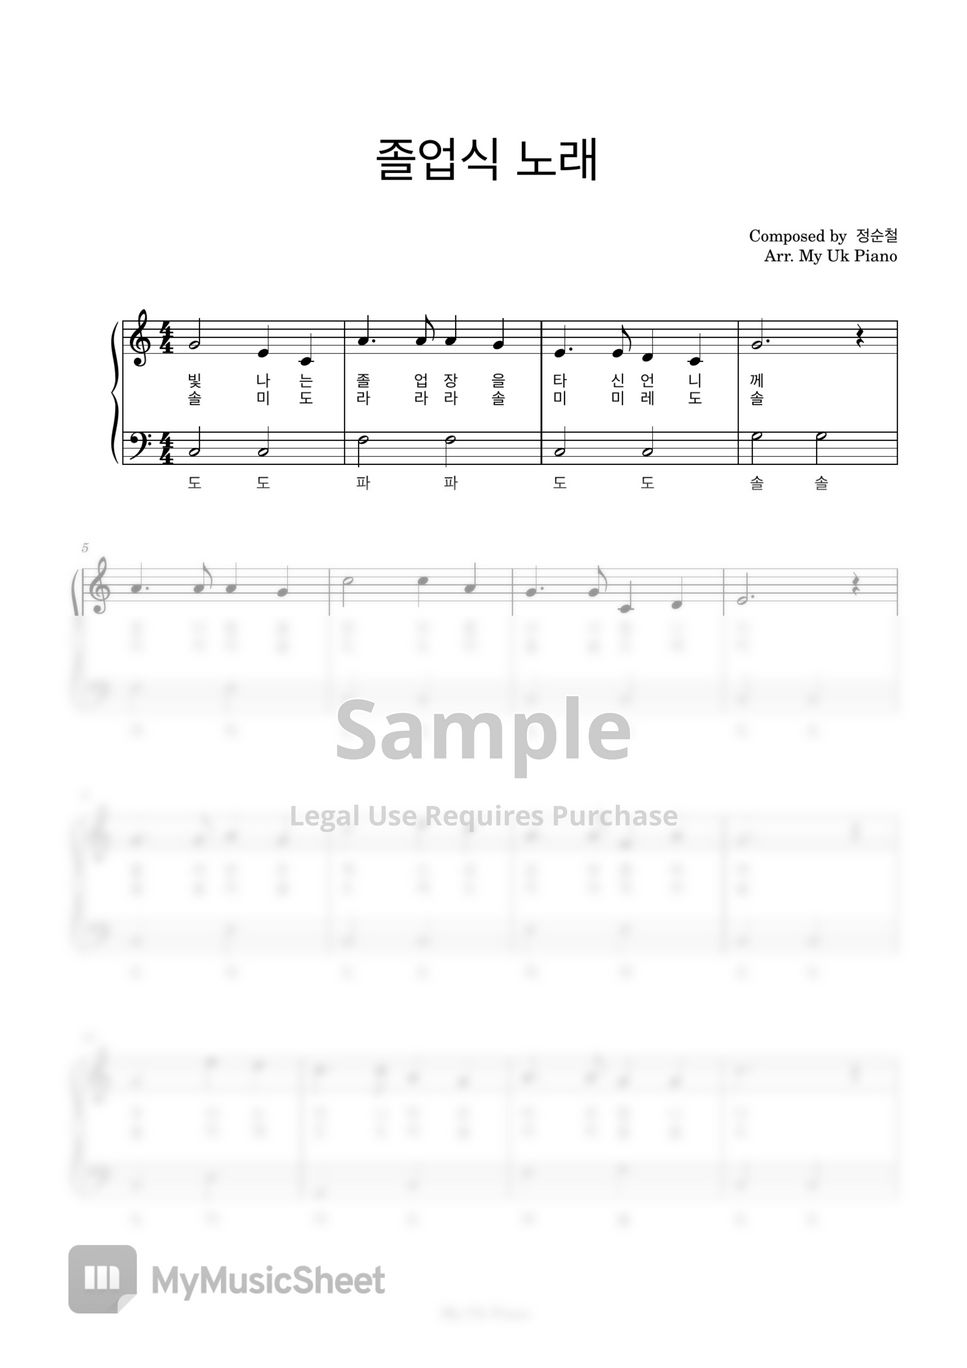 졸업식 노래 (쉬운계이름악보,  C Key) by My Uk Piano